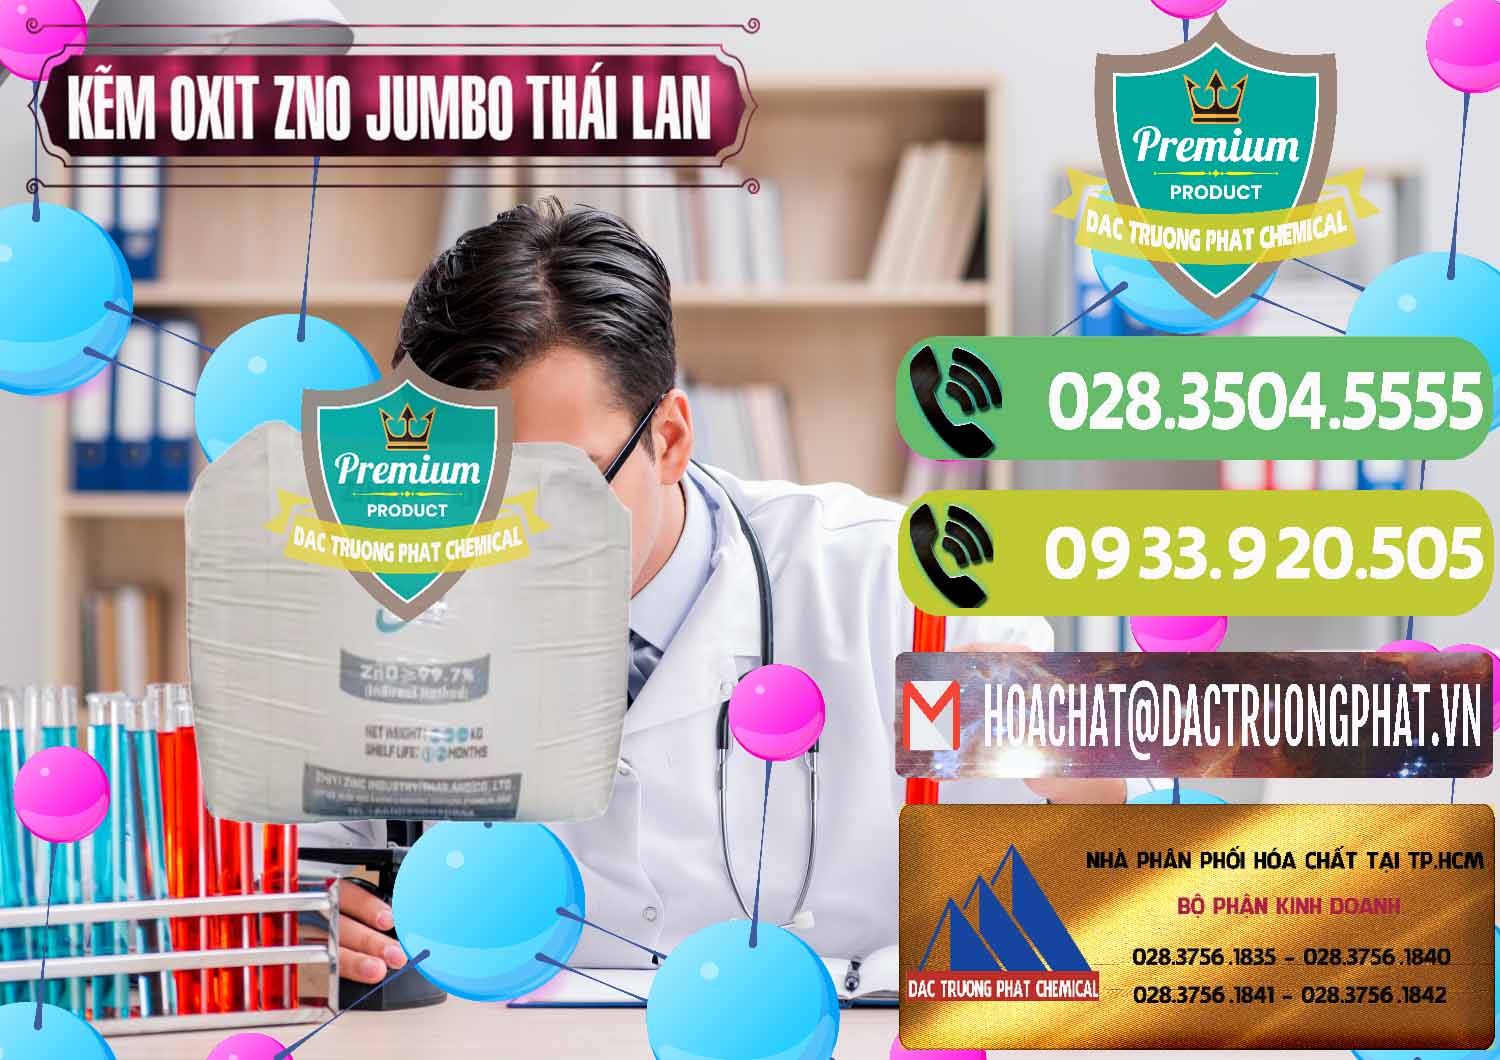 Bán - cung cấp Zinc Oxide - Bột Kẽm Oxit ZNO Jumbo Bành Thái Lan Thailand - 0370 - Nơi chuyên phân phối - cung ứng hóa chất tại TP.HCM - hoachatmientay.vn